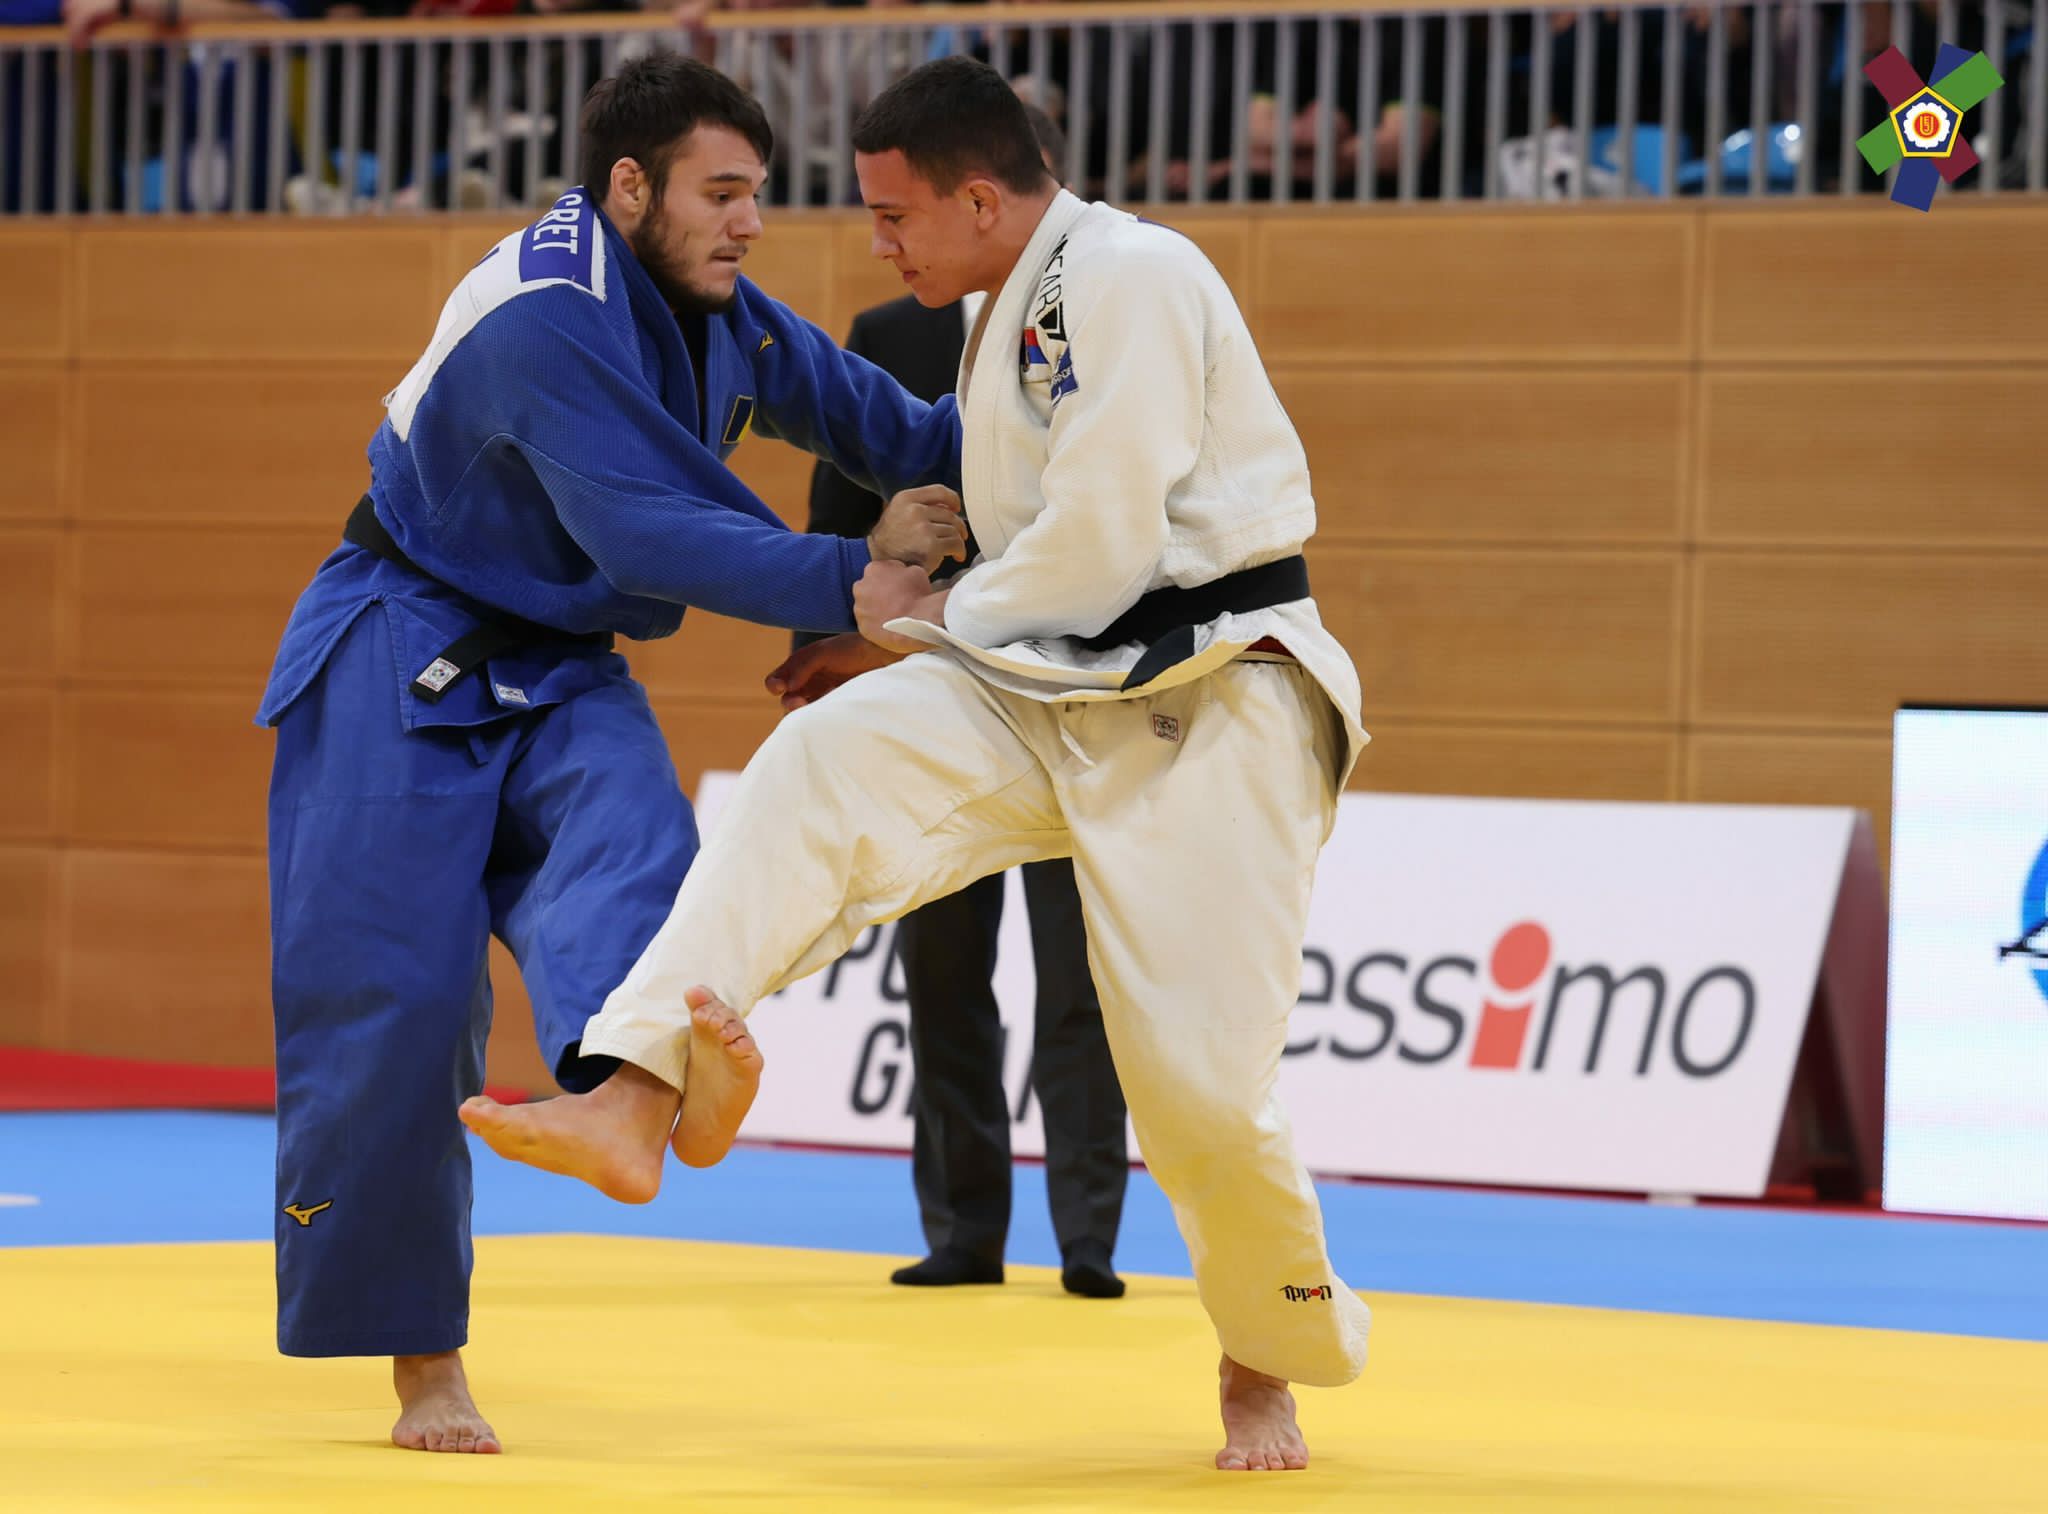 judo (9)